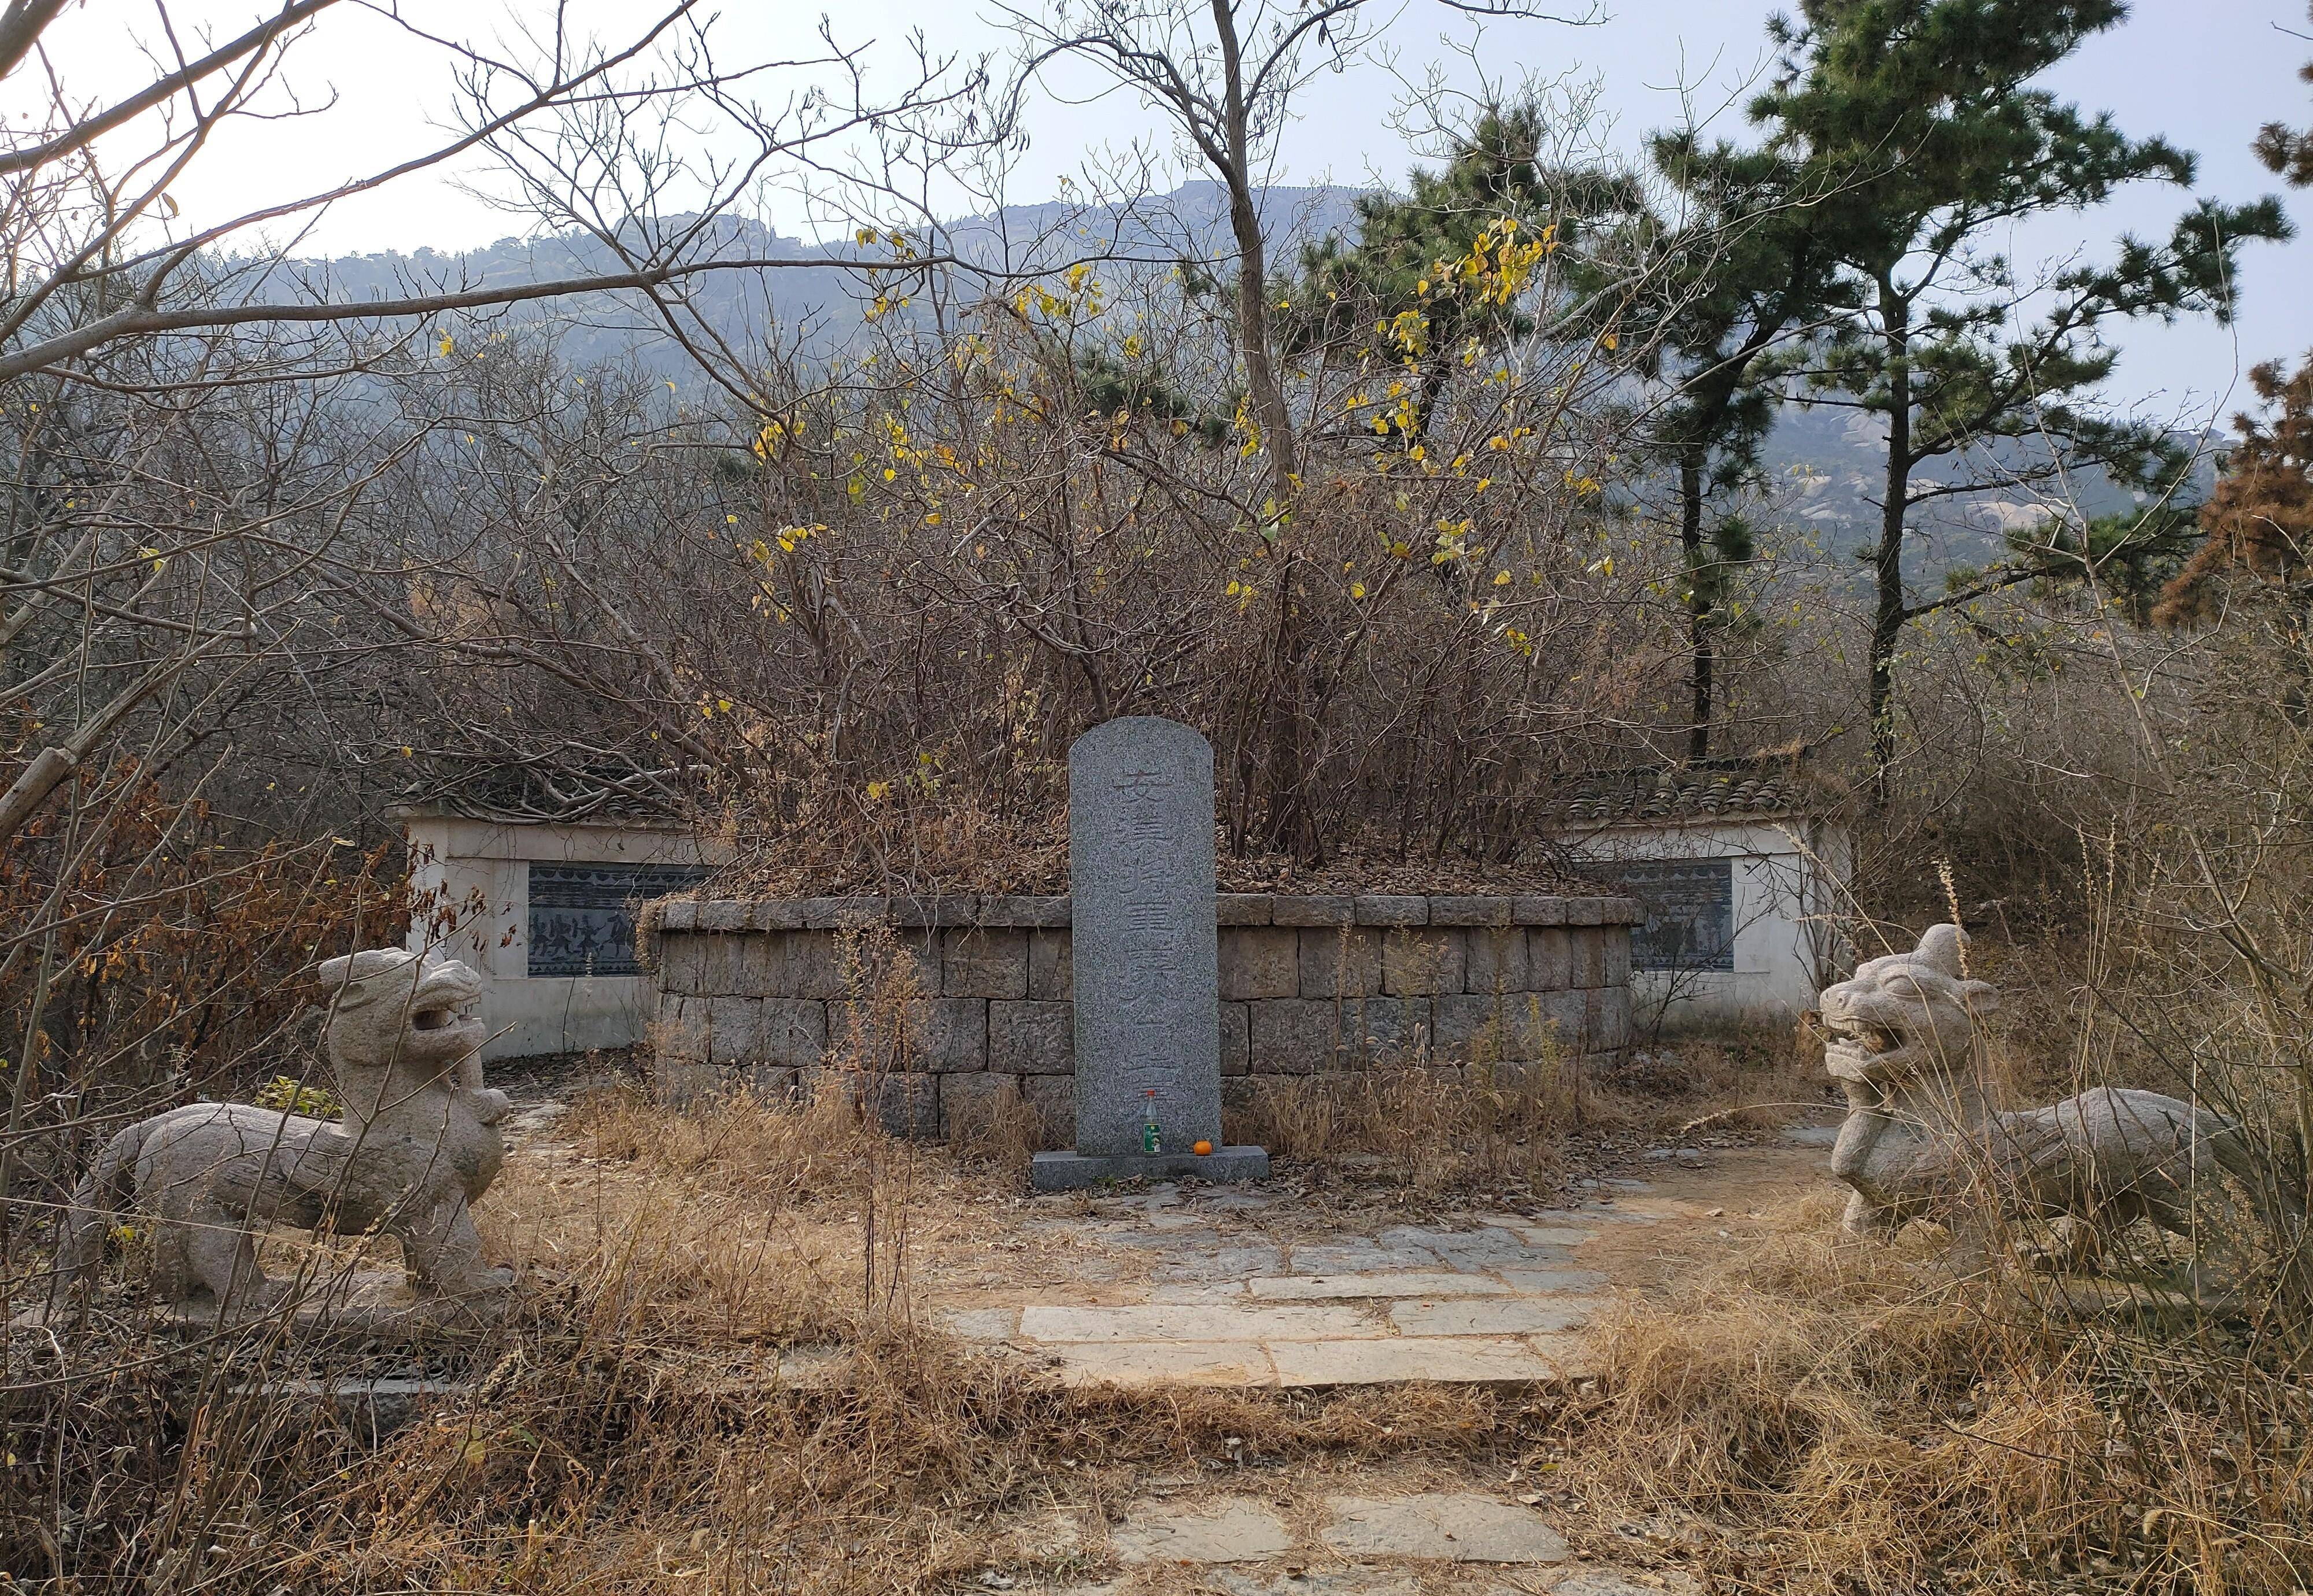 连云港石棚山景区,刘备兵败徐州后的流落地,有很多古迹